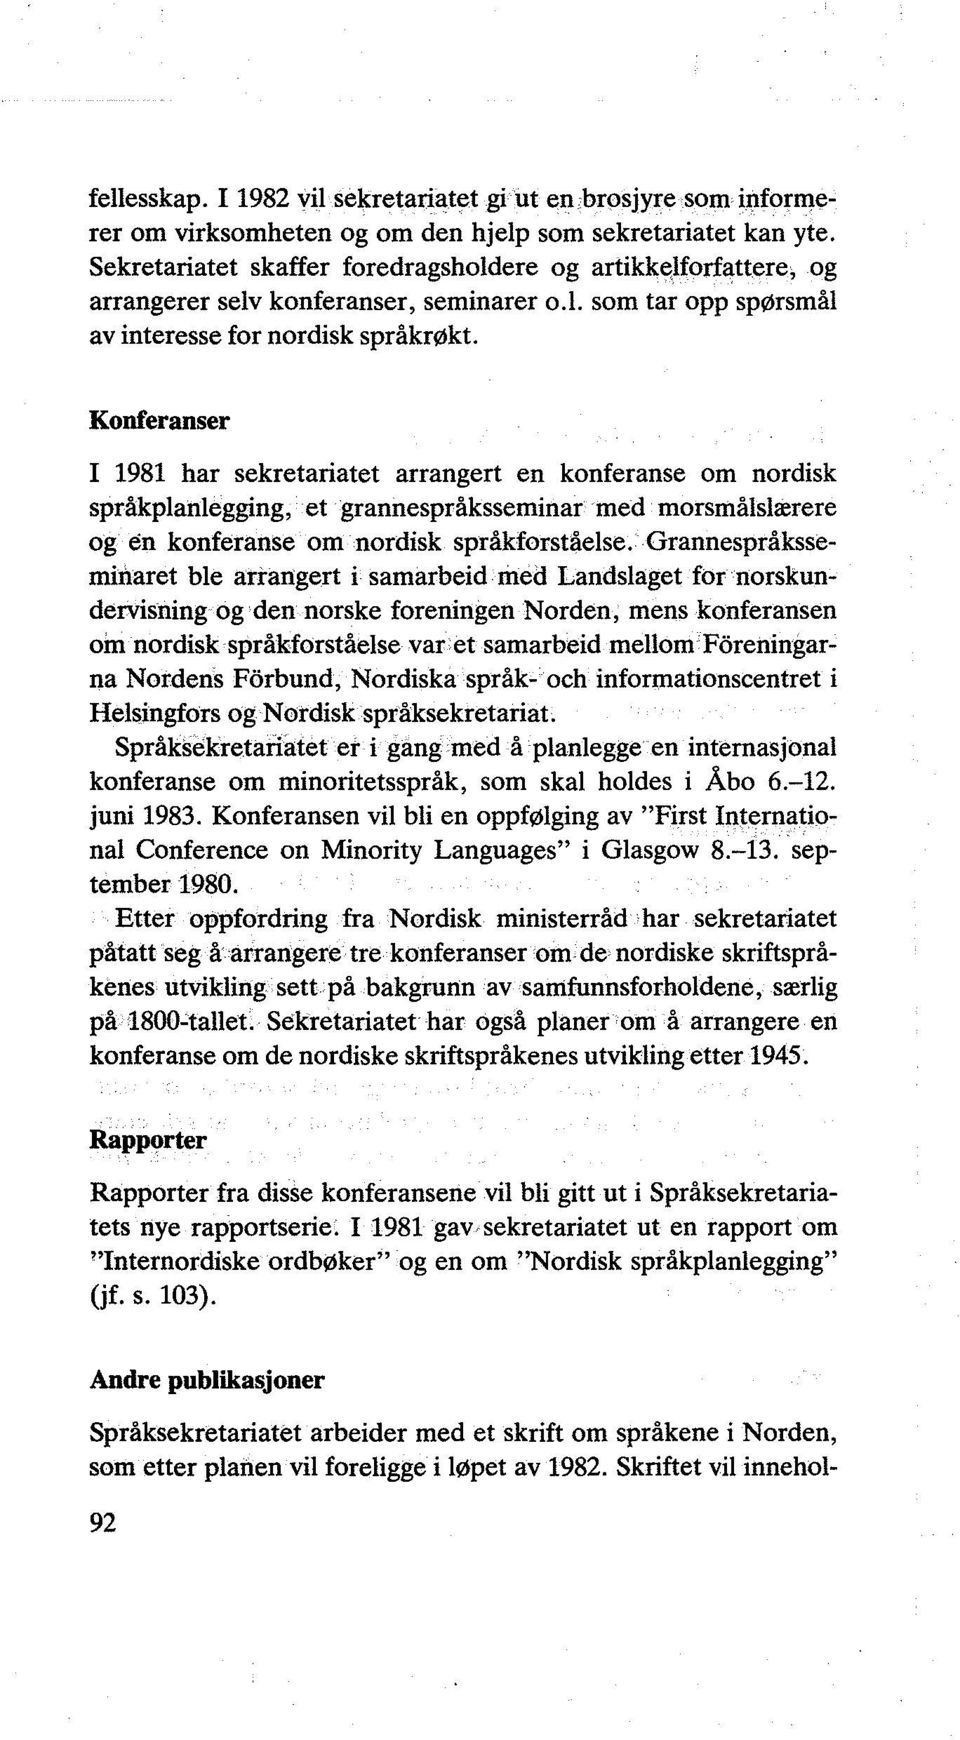 Konferanser I 1981 har sekretariatet arrangert en konferanse om nordisk språkplanlegging, et grannespråksseminar med morsmålslærere og en konferanse om nordisk språkforståelse.